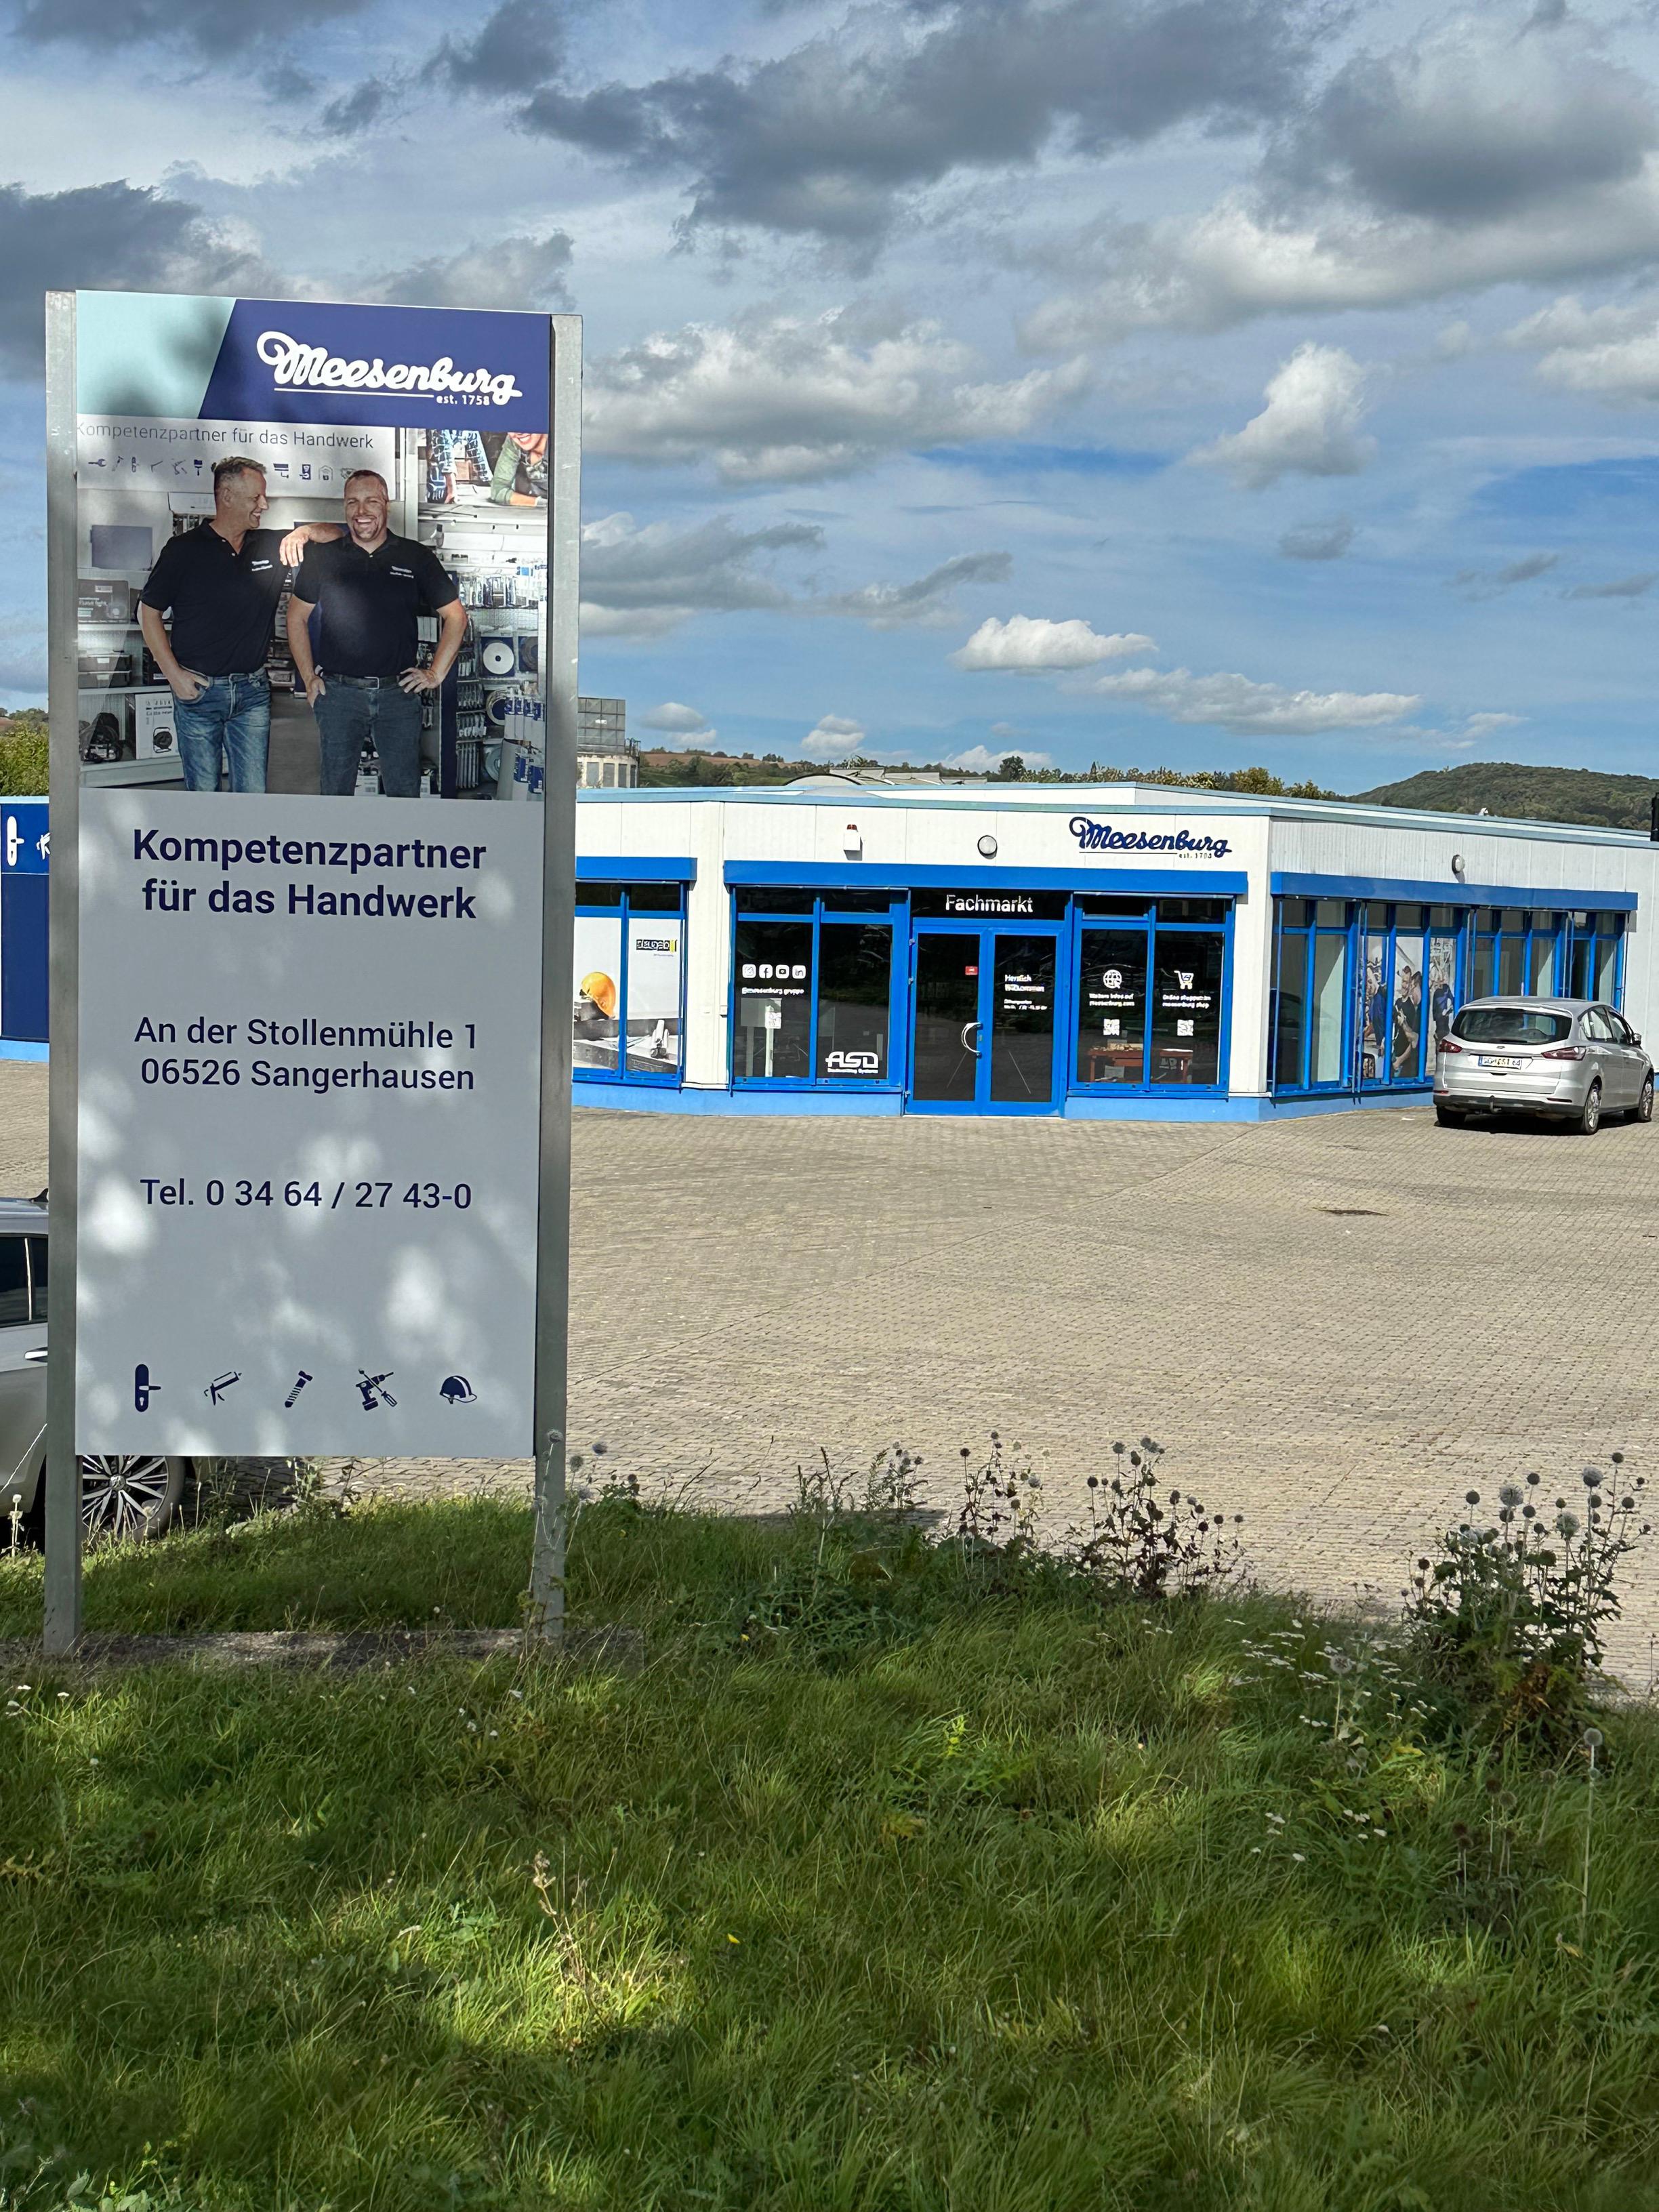 Bilder Meesenburg GmbH & Co. KG in Sangerhausen ehemals ASD